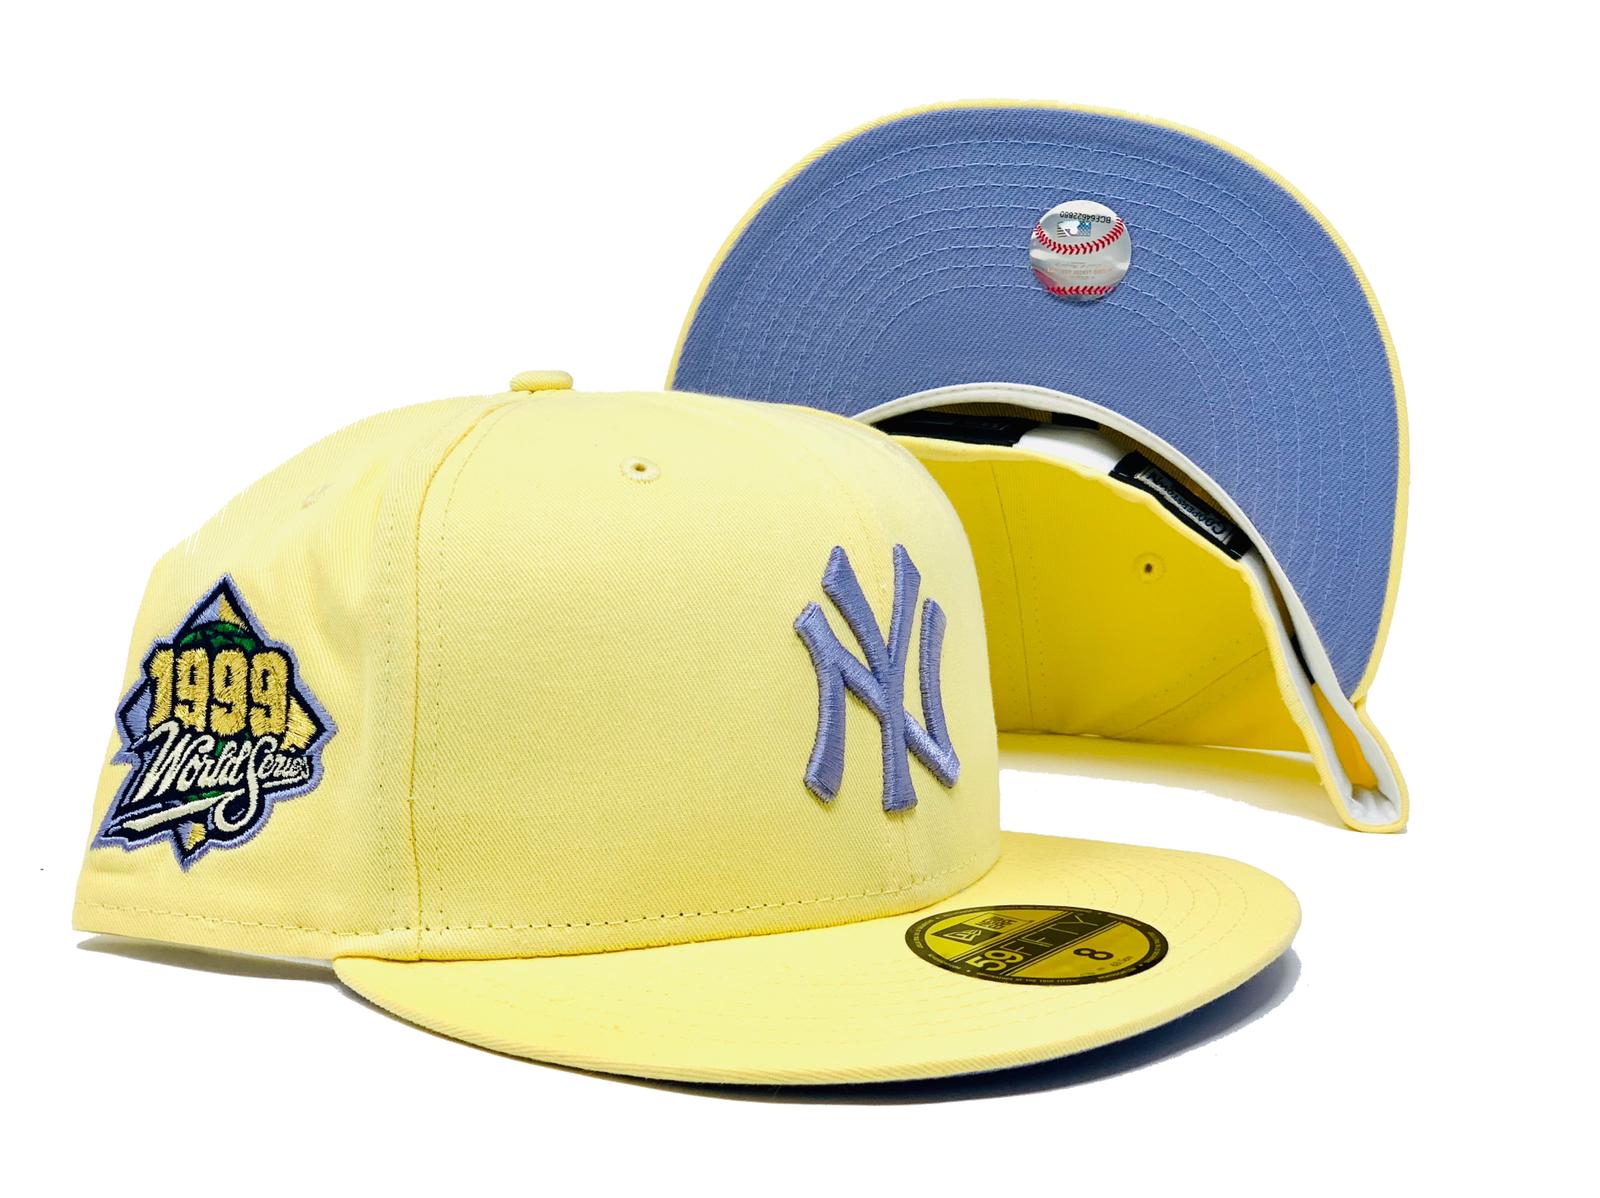 New era MLB Team Logo New York Yankees Sleeveless T-Shirt Yellow